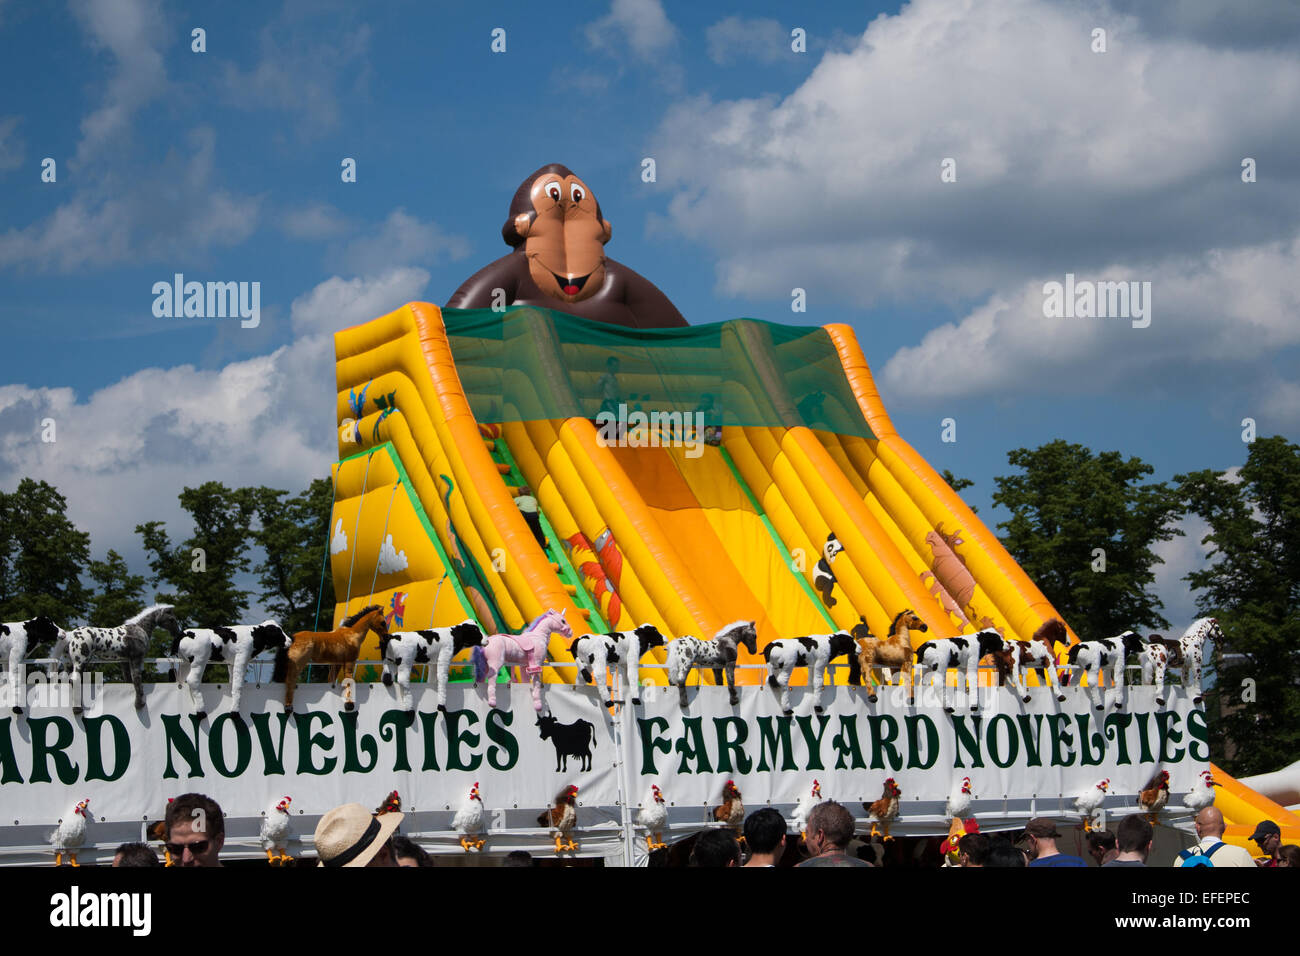 Toboggan gonflable géant avec un thème de singe à une foire amusante à côté d'un stand de nouveautés de ferme. Parkers Piece, Cambridge, Royaume-Uni Banque D'Images